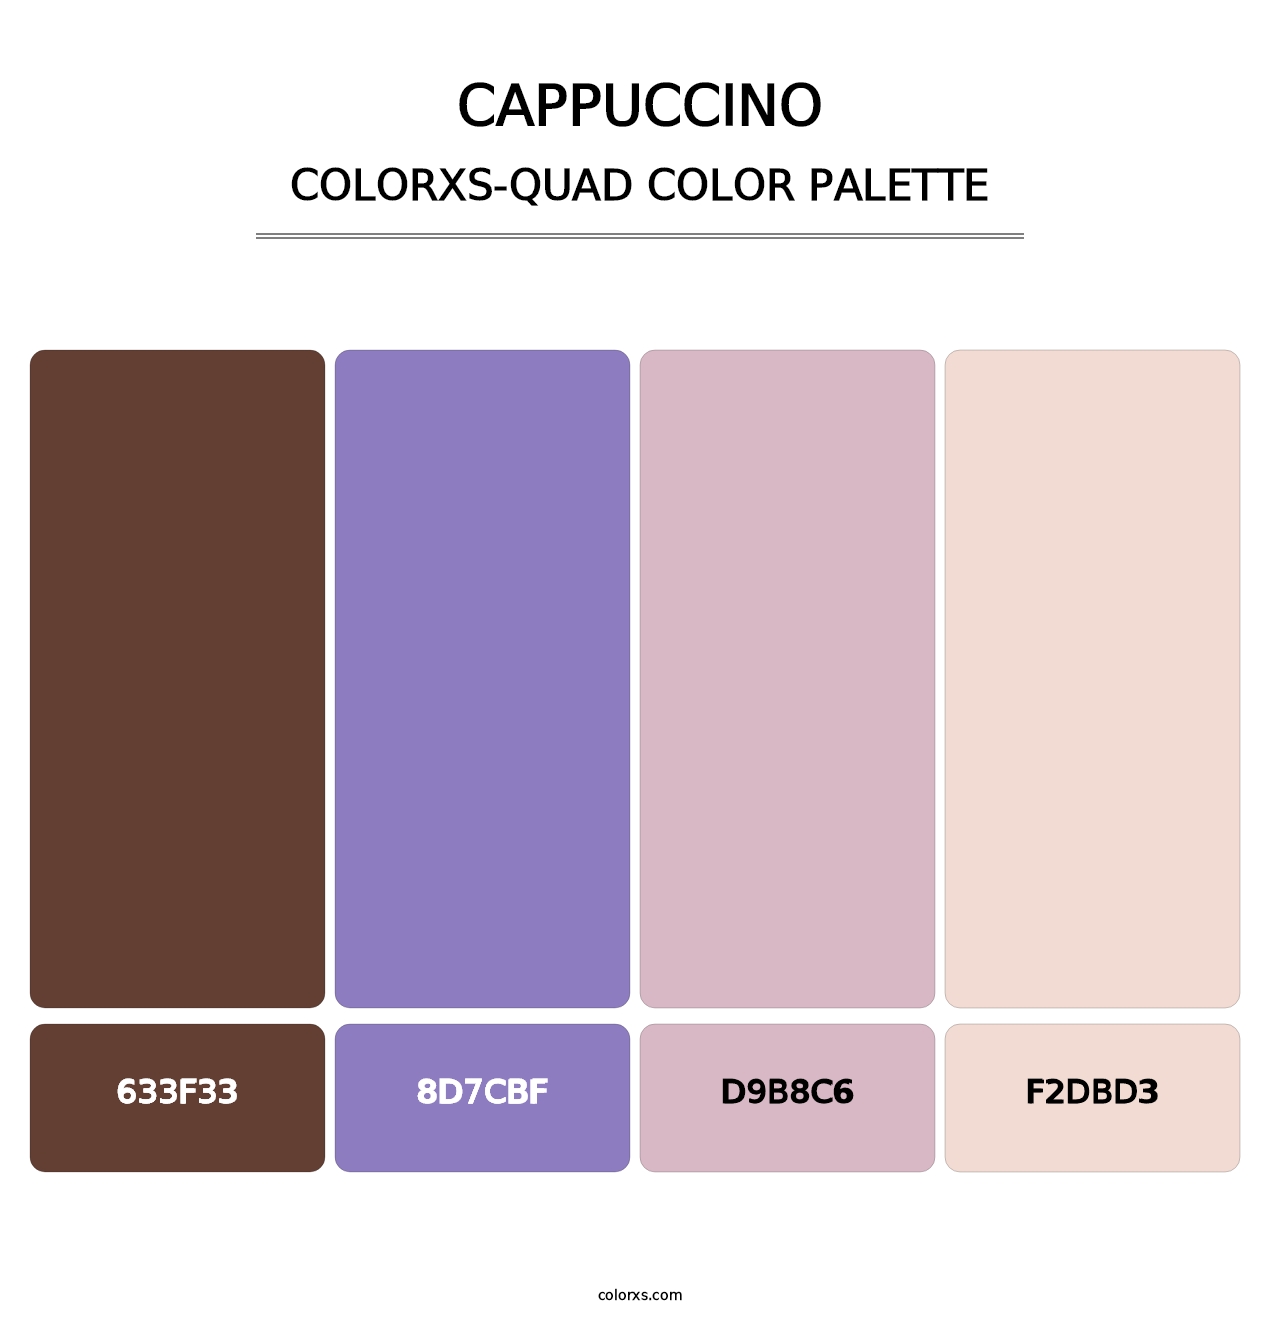 Cappuccino - Colorxs Quad Palette